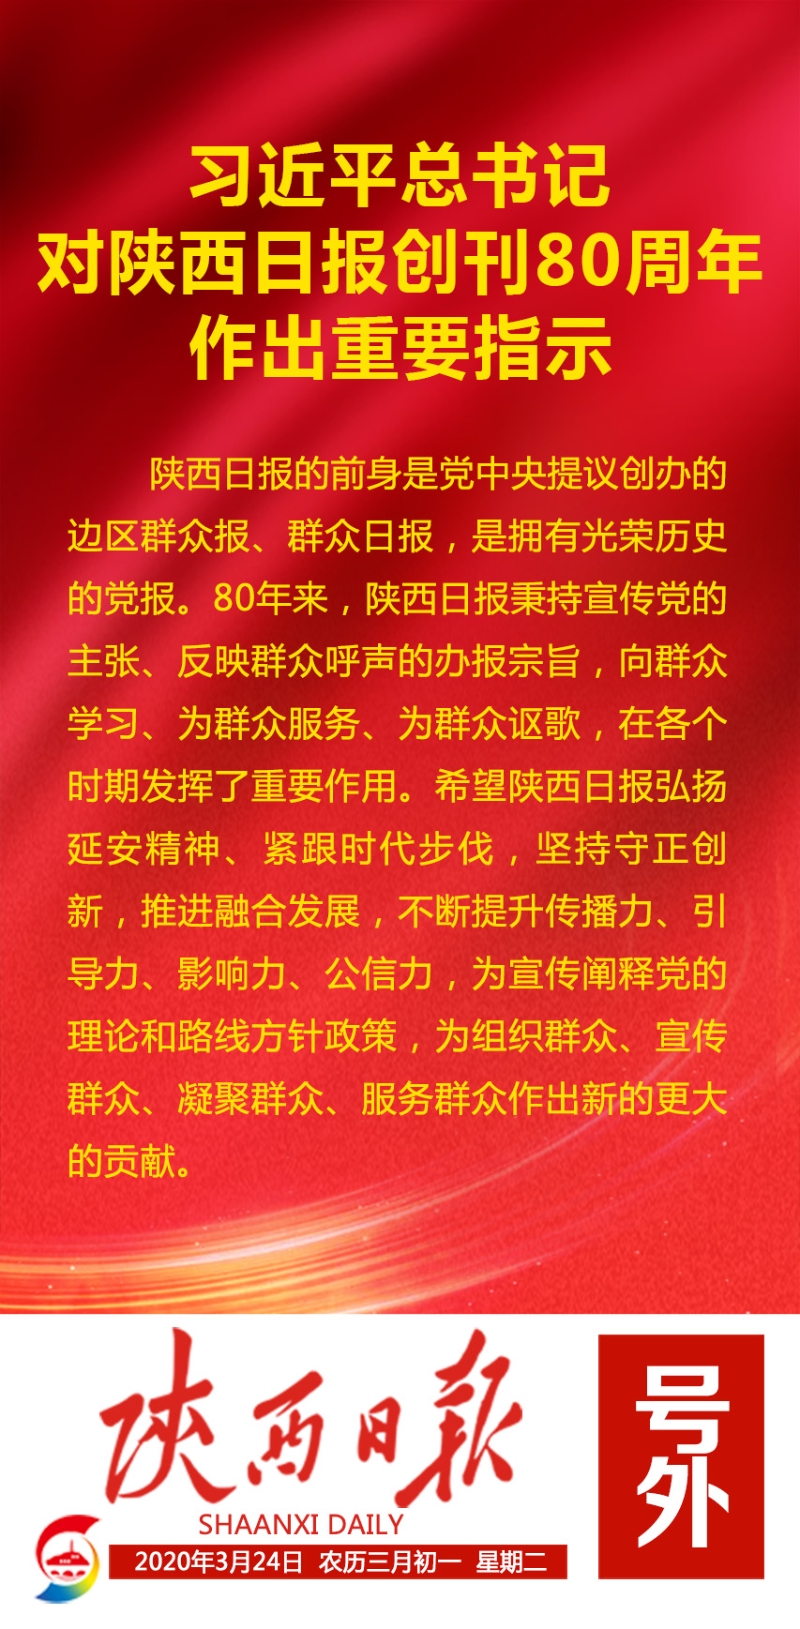 习近平总书记对陕西日报创刊80周年作出重要指示